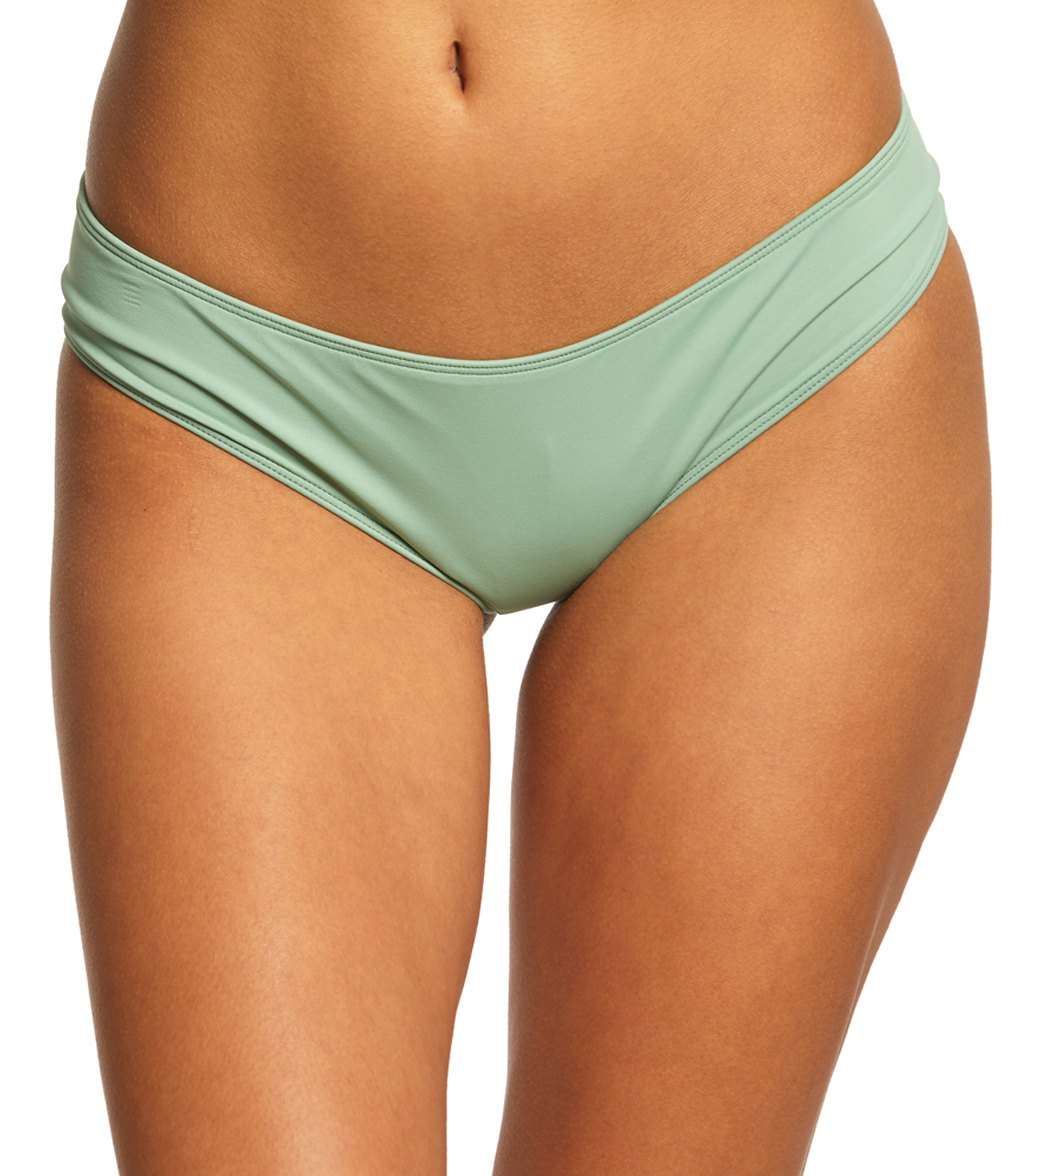 O'neill Women's Salt Water Solids Hipster Swimsuit Bottom - Green X-Small Elastane/Polyamide - Swimoutlet.com